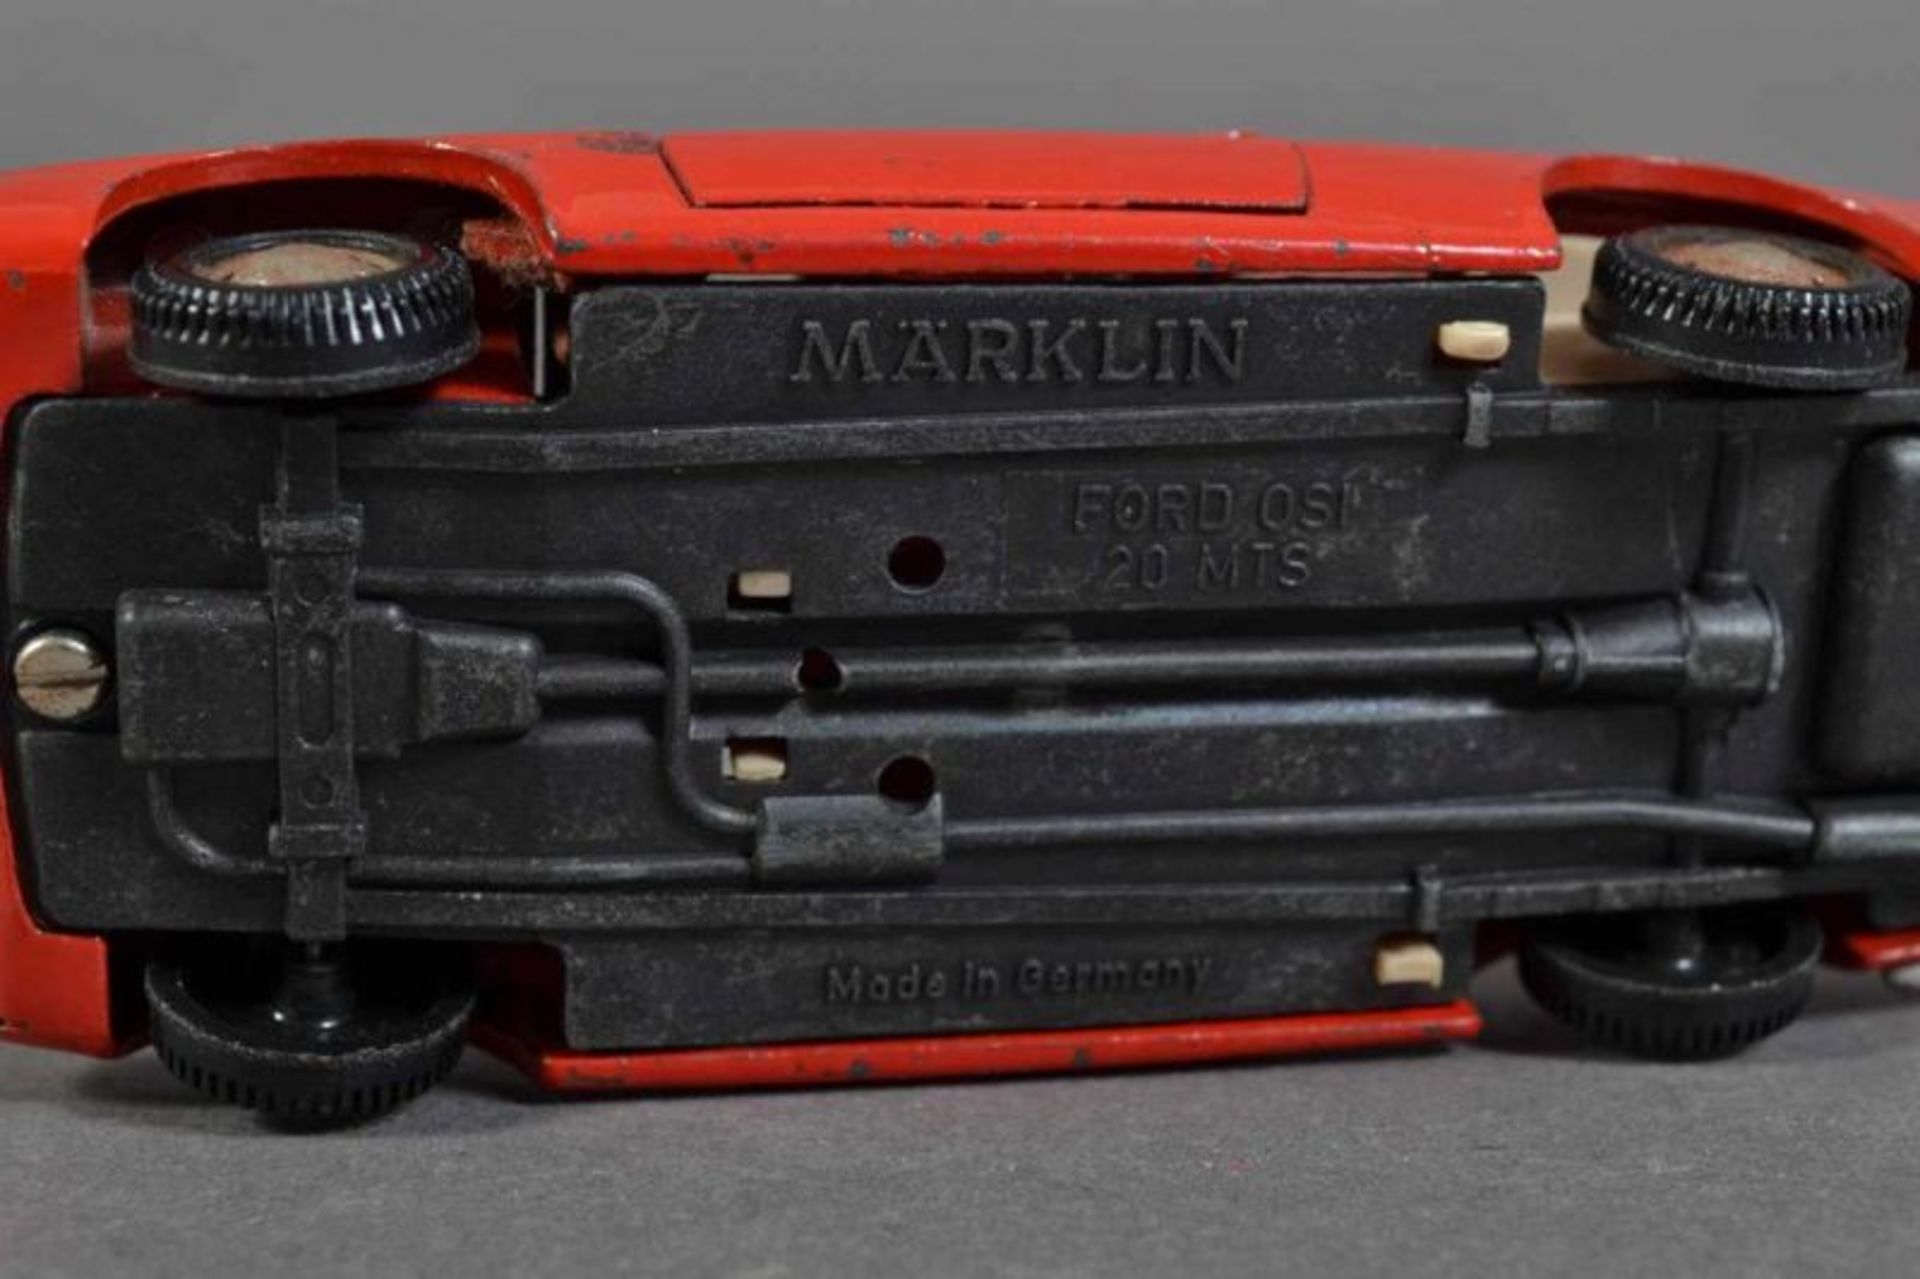 "FORD Dsi 20 MTS" - Märklin. Metall, rot lackiert. Länge 10 cm. Kennzeichen "S-VW 53". Bespielter - Image 3 of 12